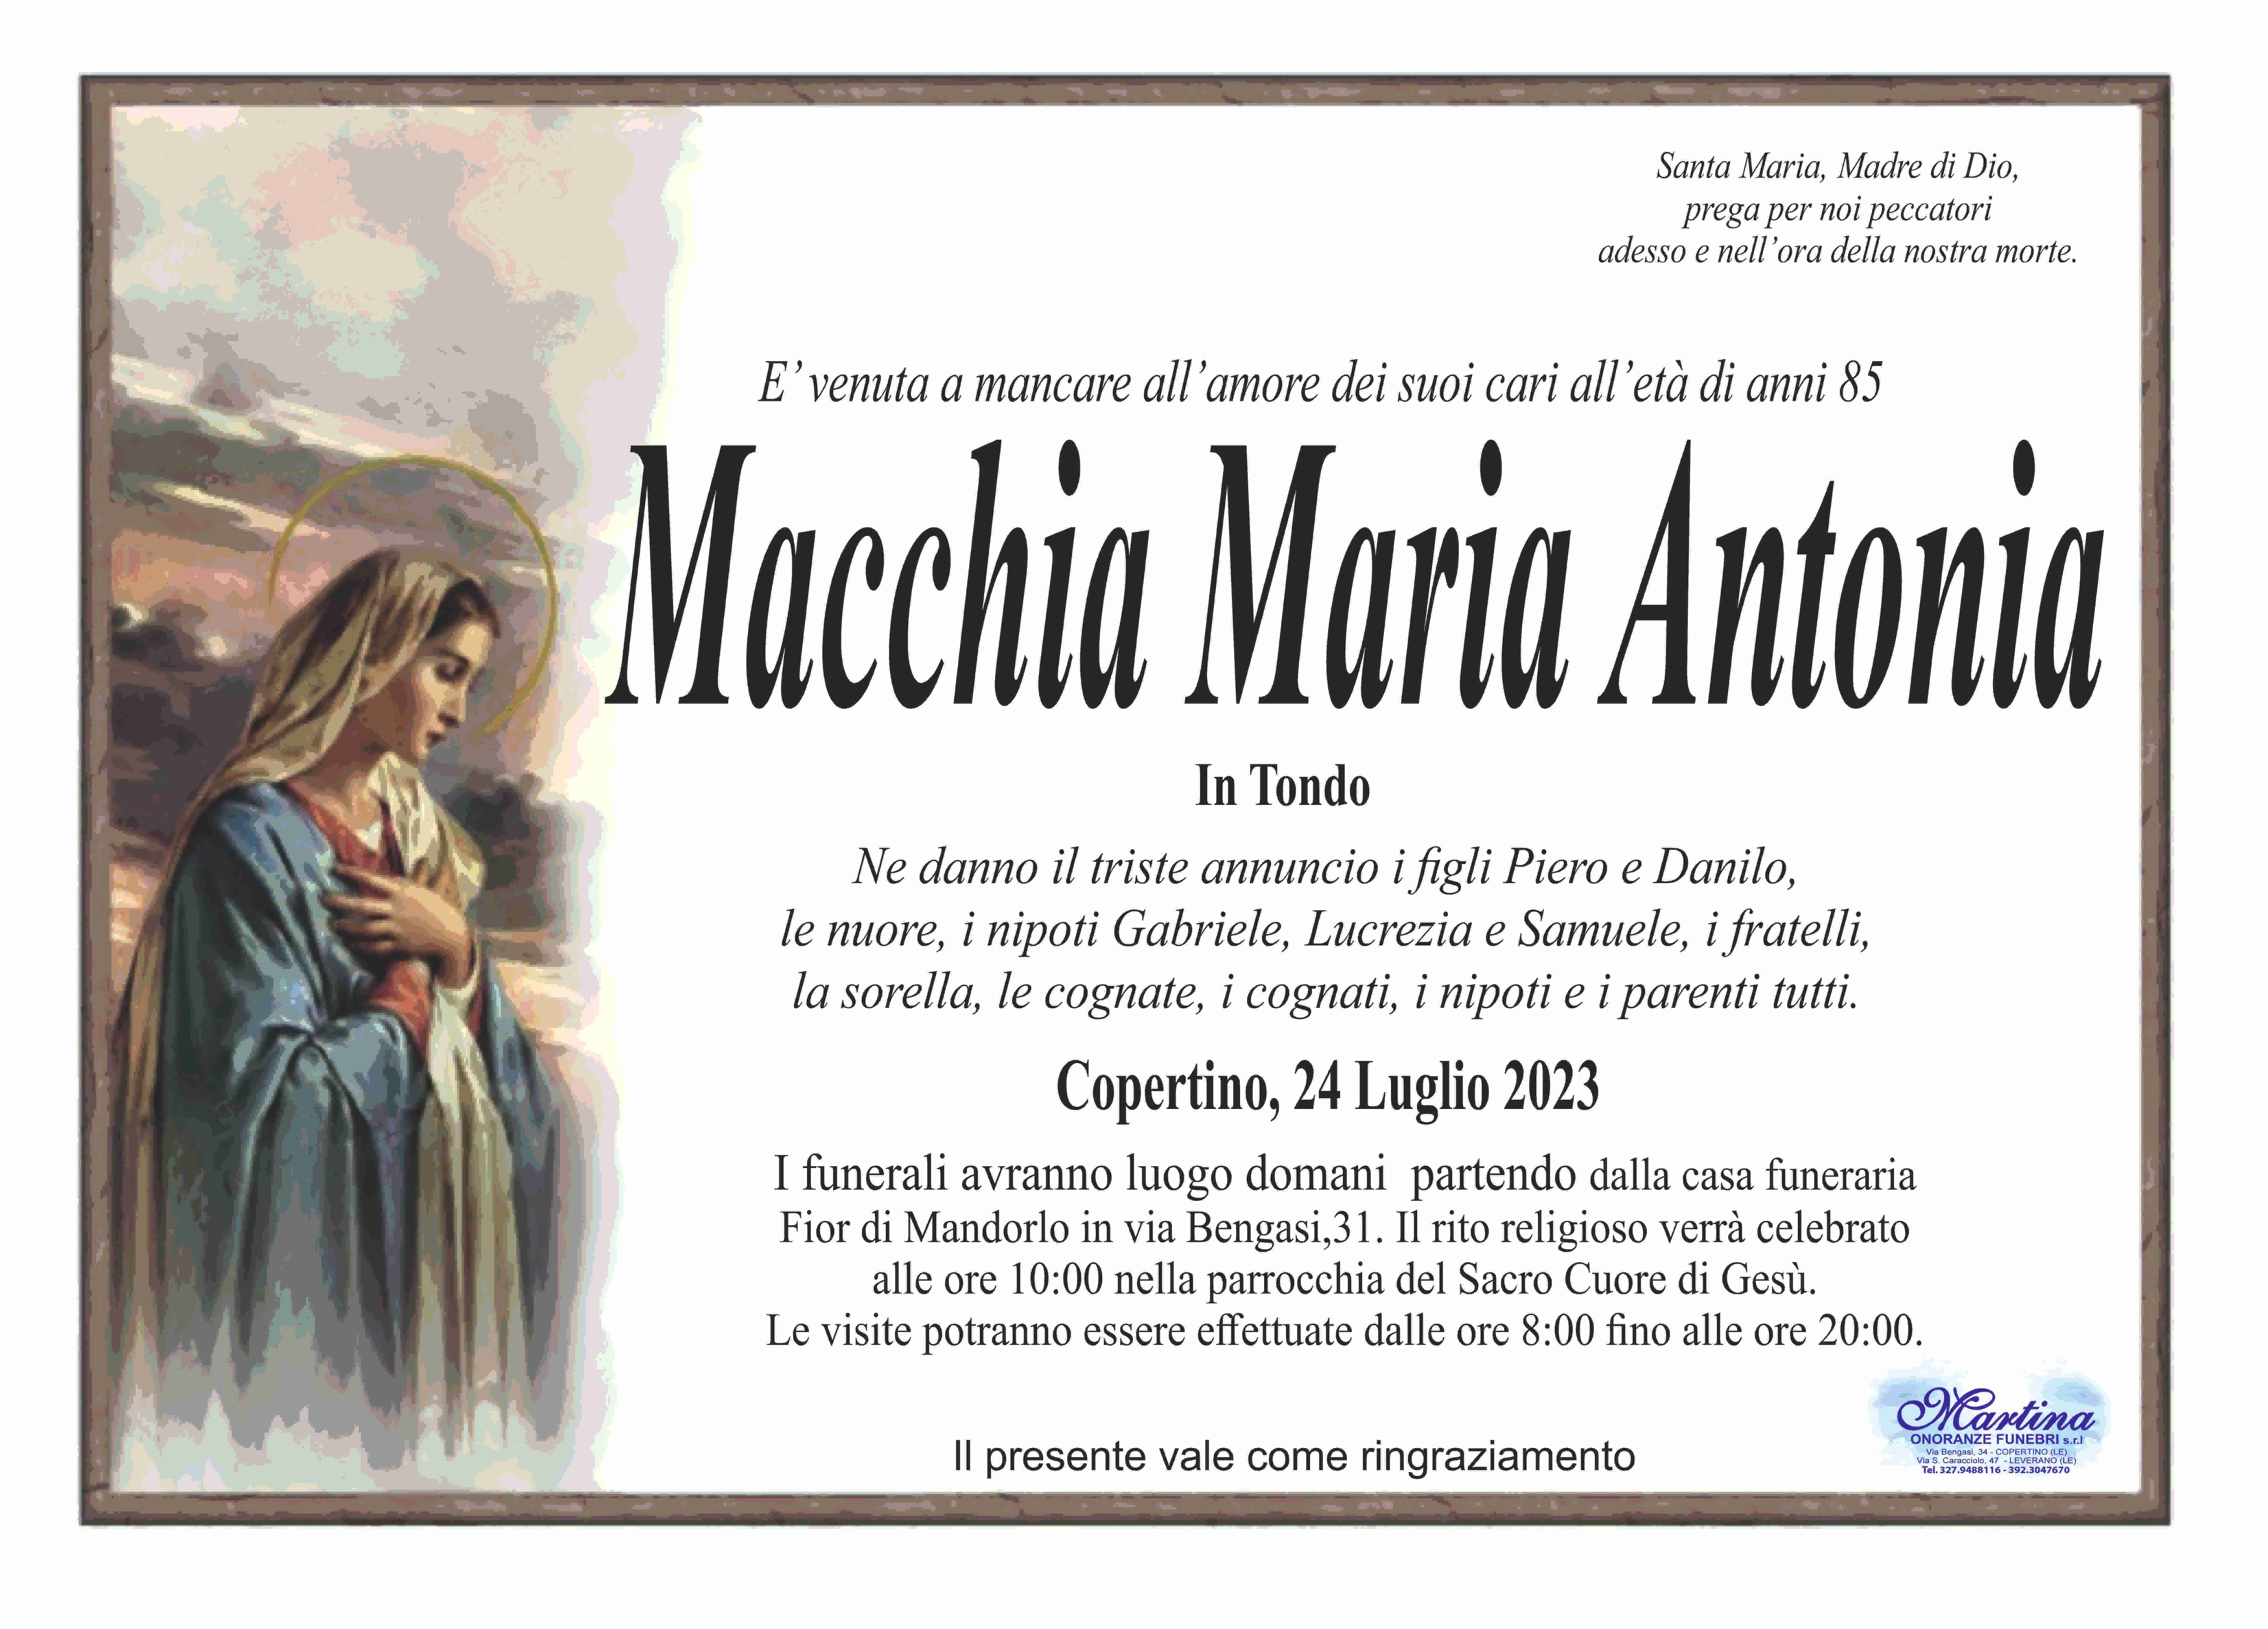 Maria Antonia Macchia